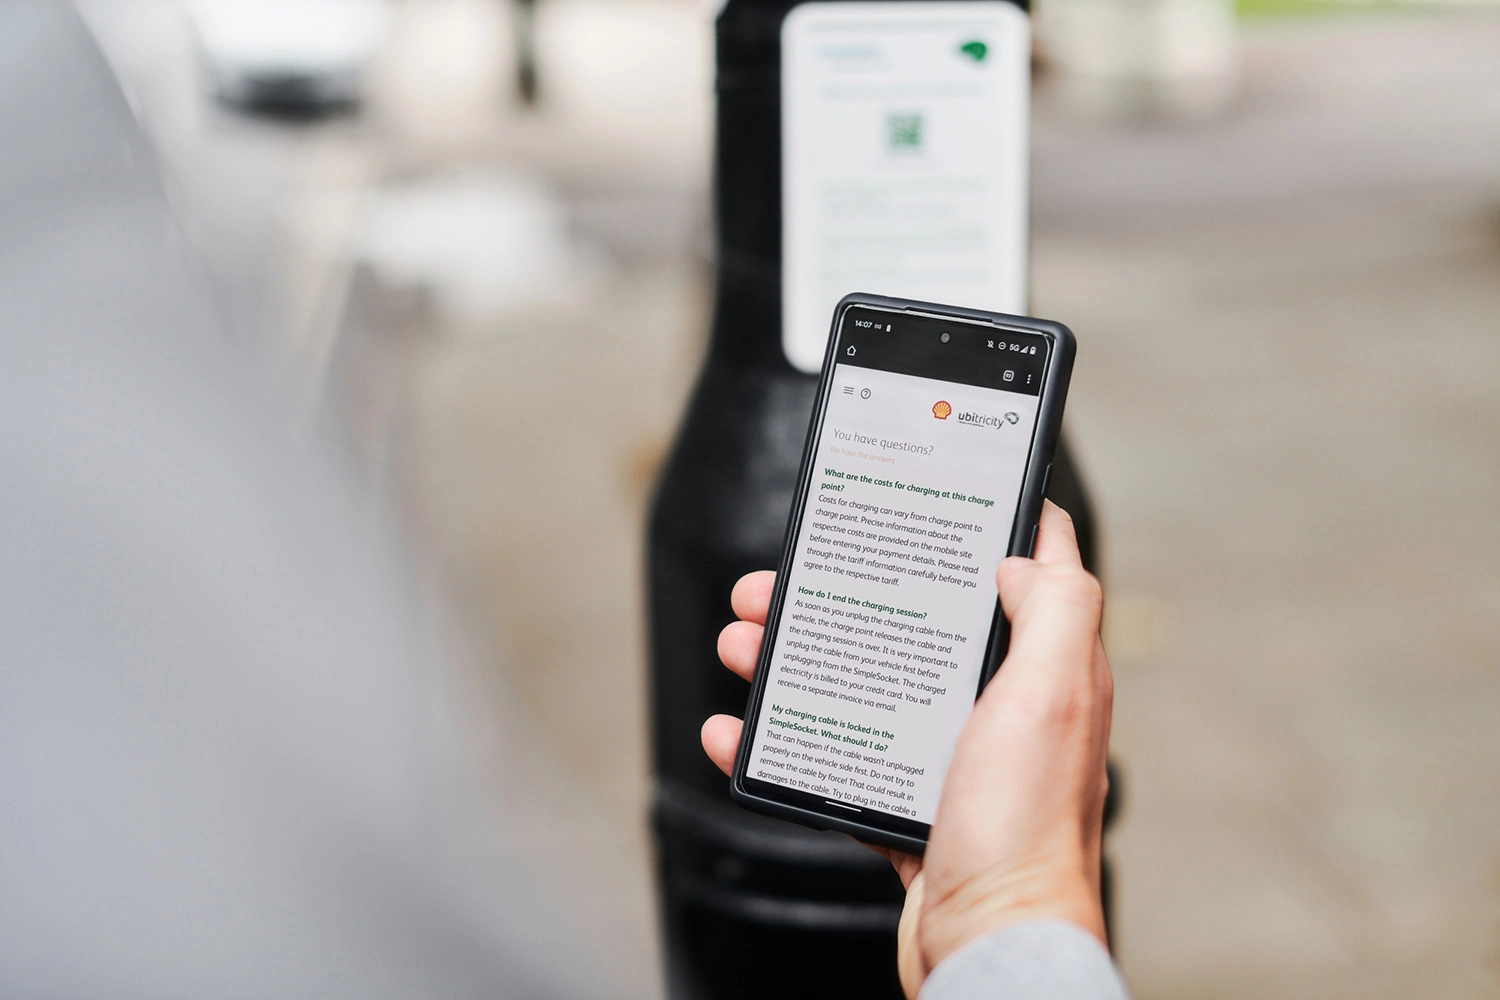 Fahrer mit Smartphone scrollt durch die FAQs für das Aufladen im öffentlichen Raum an einer ubitricity-Ladestation